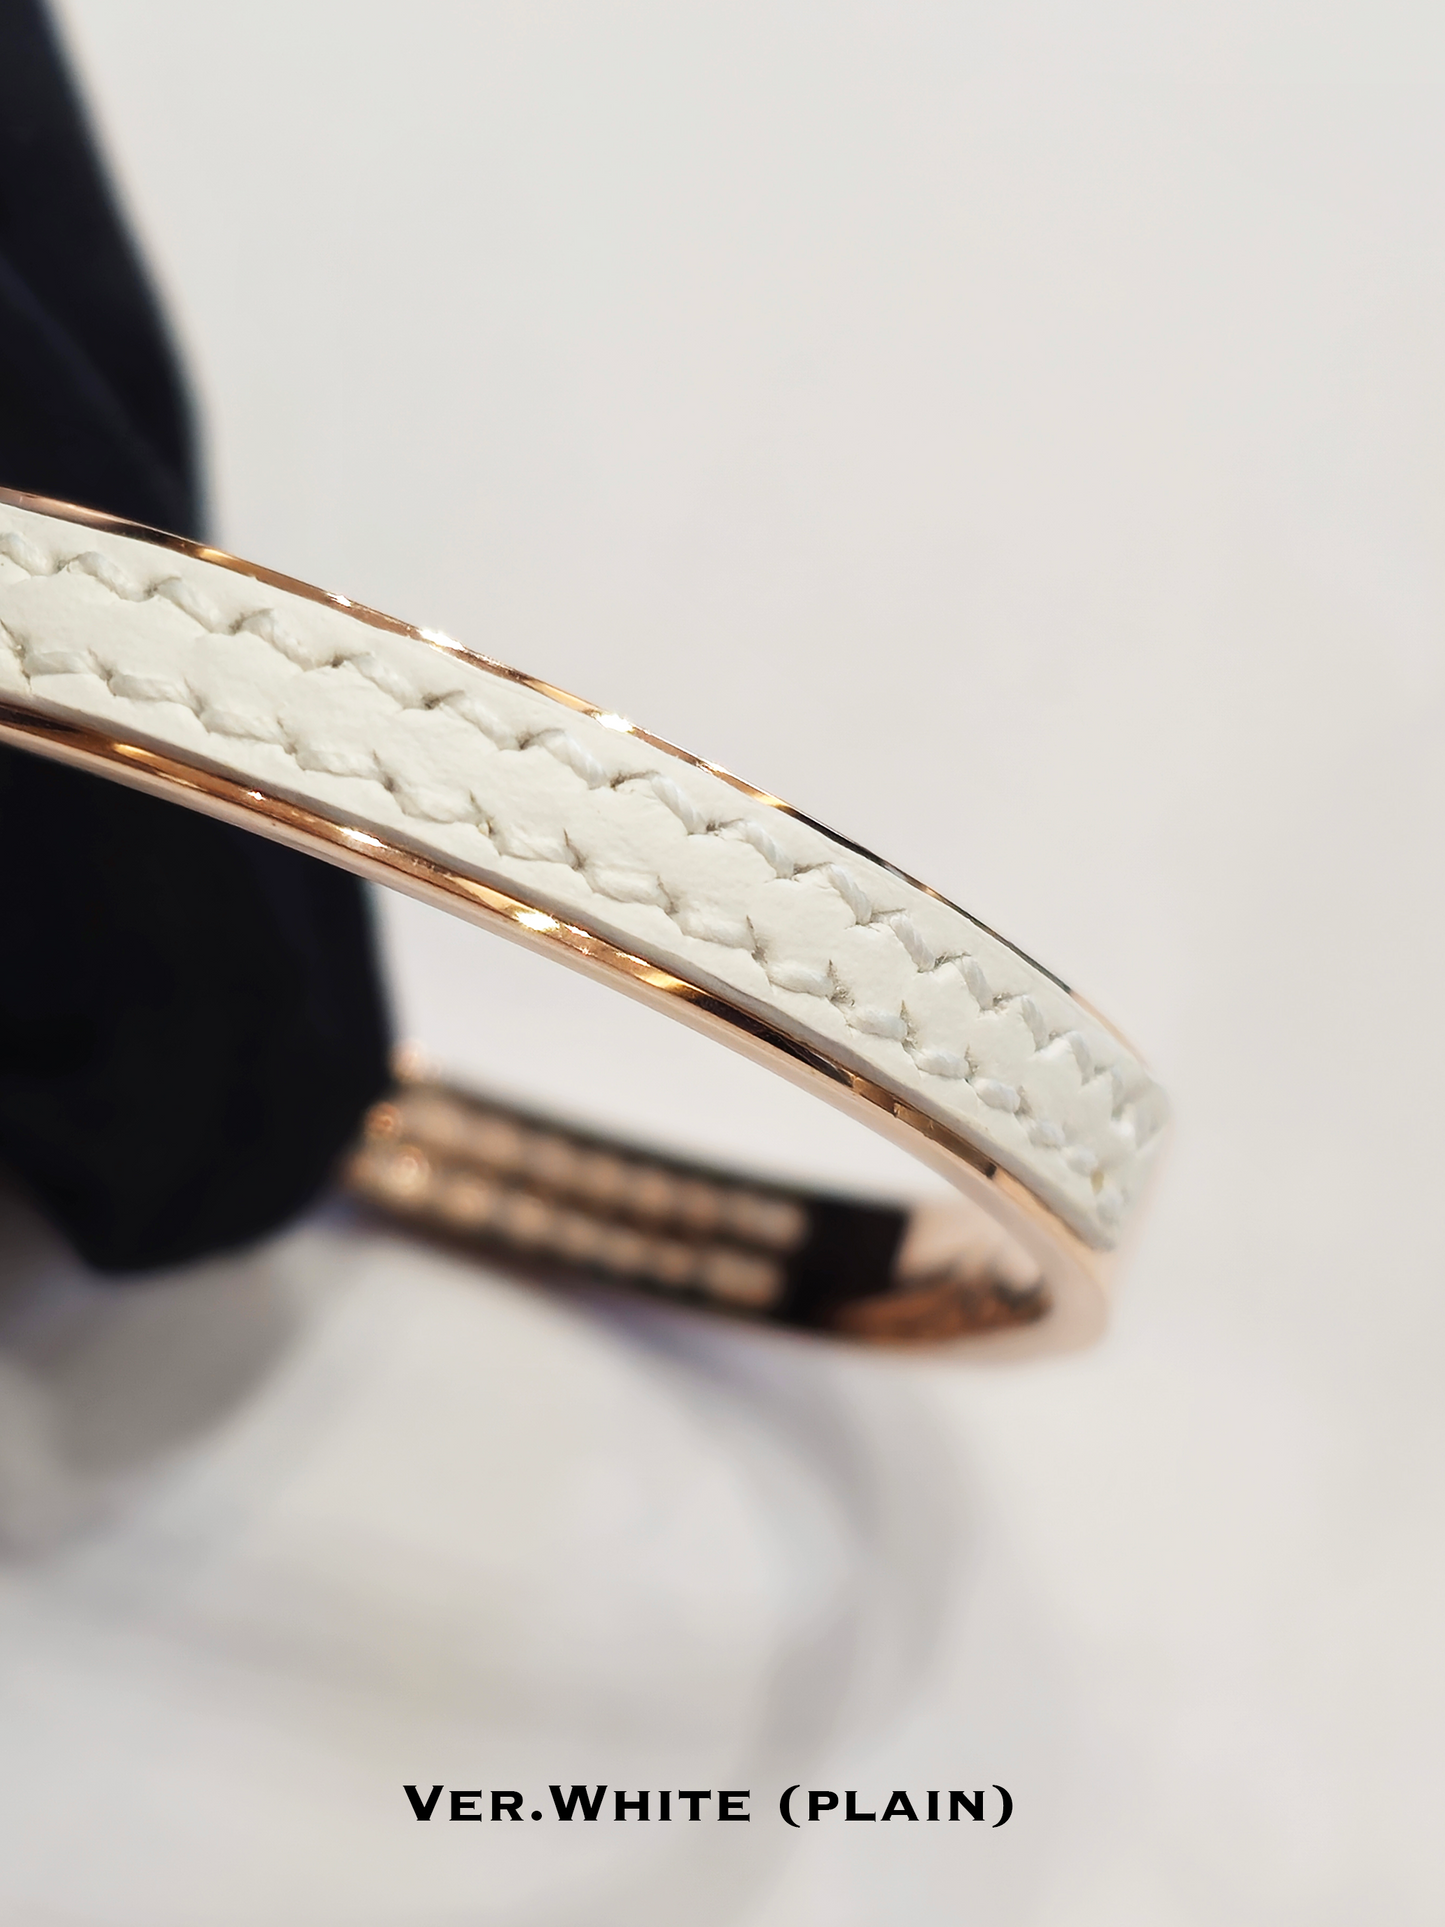 Twined Leather Bracelet, Large, White (Plain), White Nacre